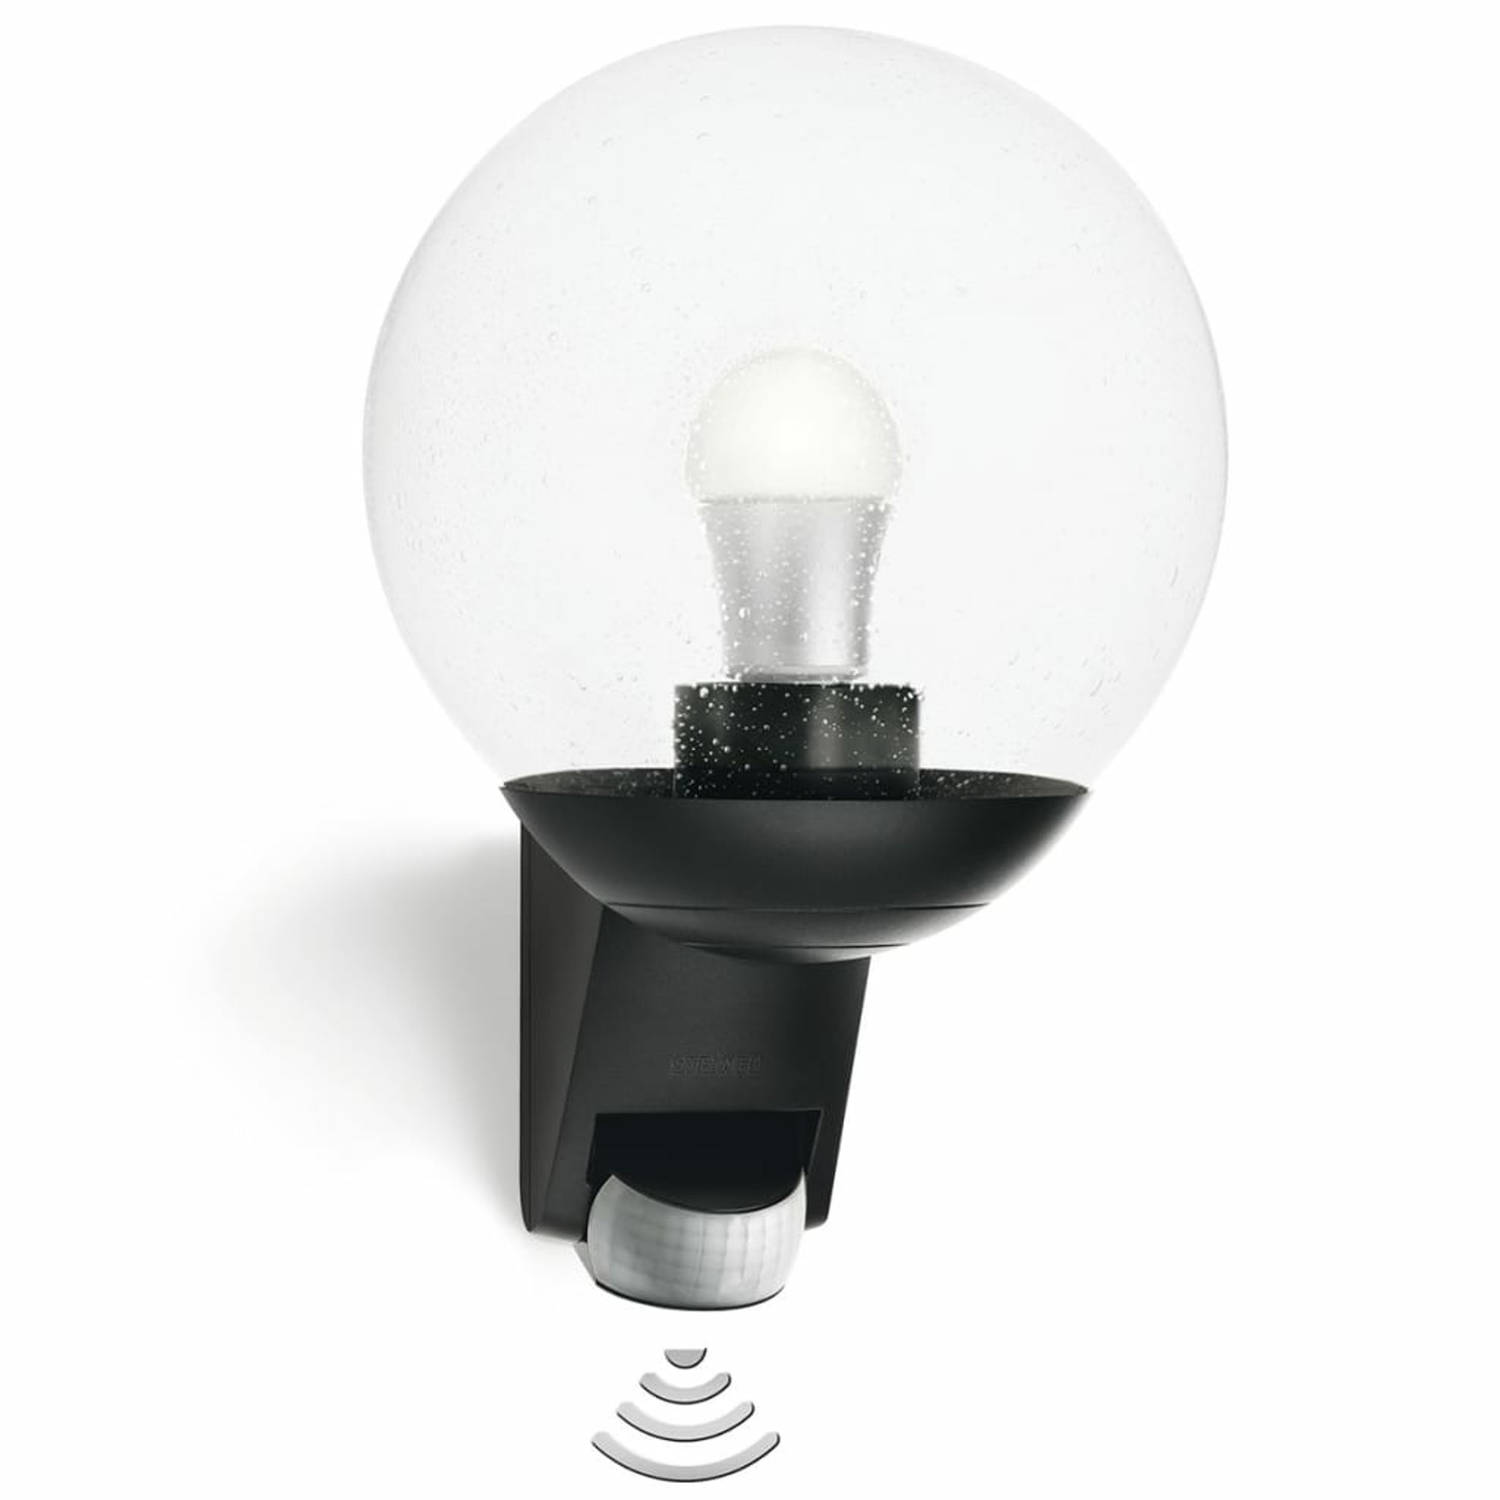 Sensor-buitenwandlamp L 585 S van STEINEL, zwart